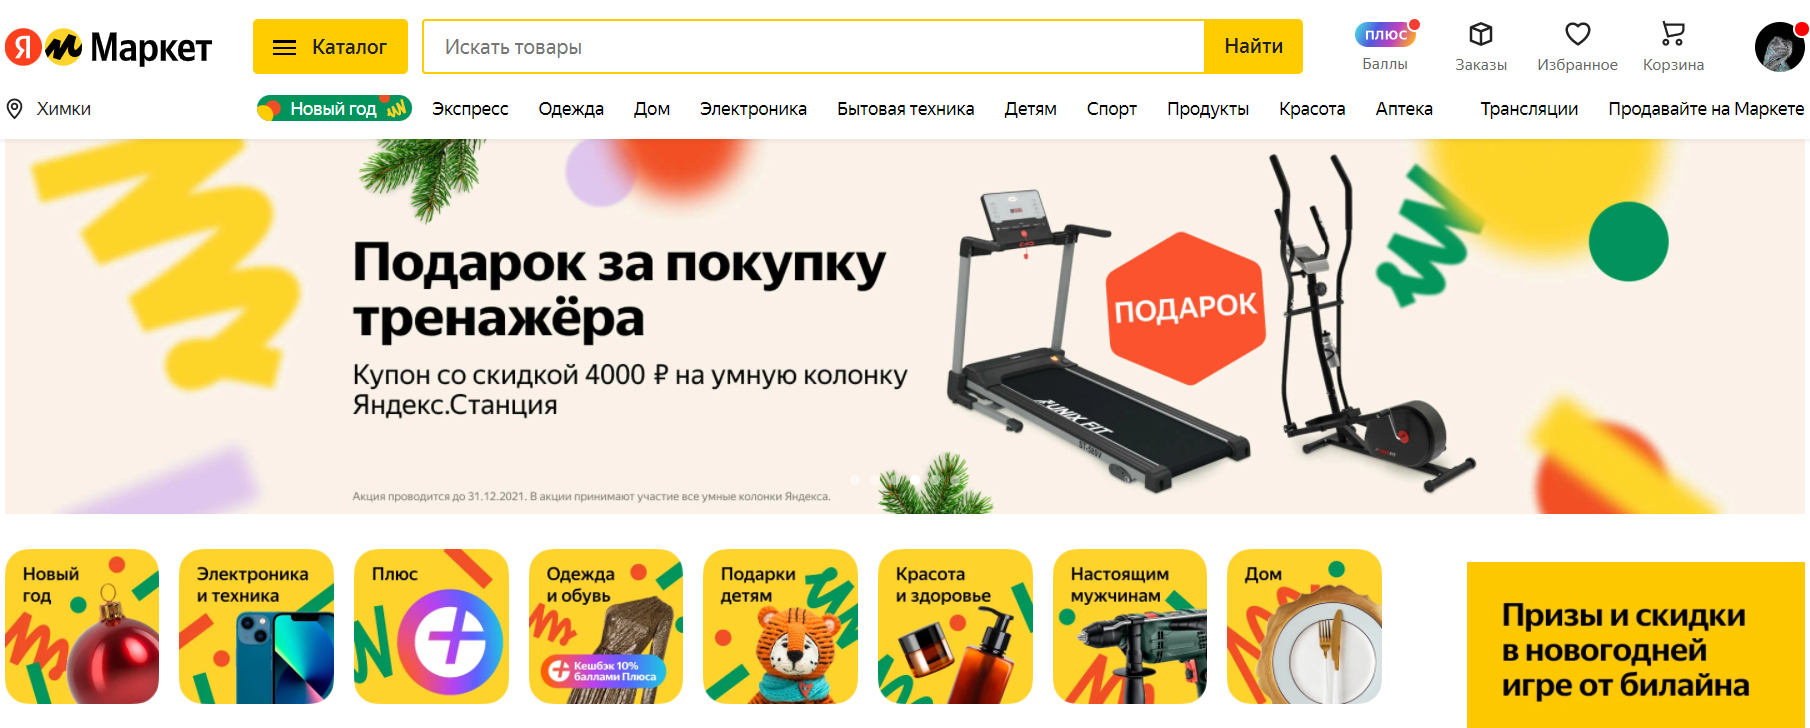 Яндекс.Маркет сайт маркетплейса